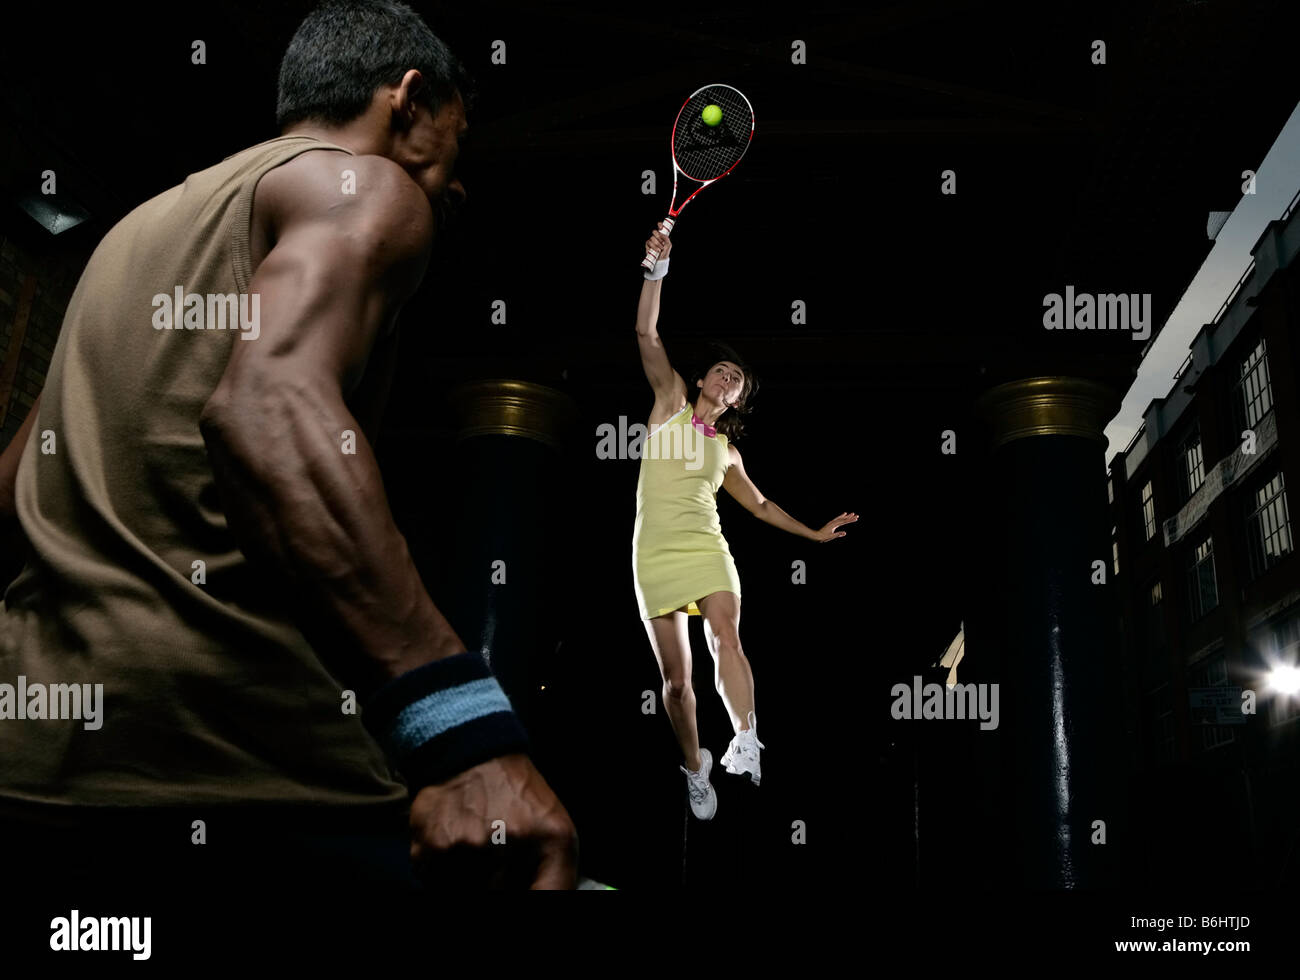 Männliche und weibliche Tennis spielen in der Nacht, in der Stadt, Stimmung, Sonne, aber immer noch daran interessiert, zu spielen und wettbewerbsfähig sein Stockfoto